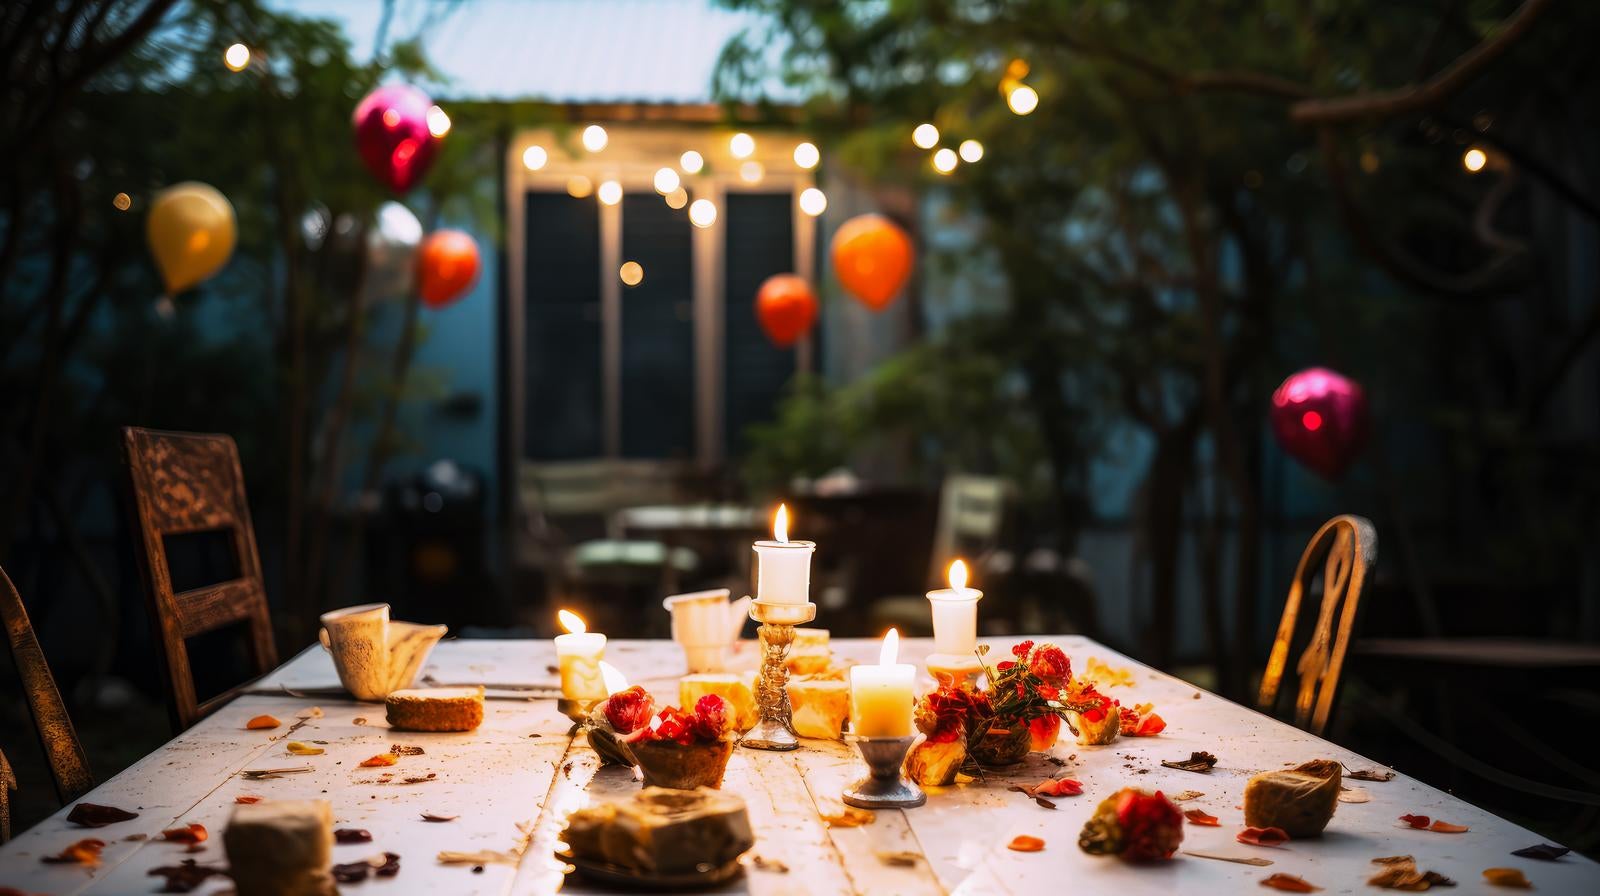 「暖かな光に包まれたキャンドルと色とりどりに装飾されたテーブル」の写真